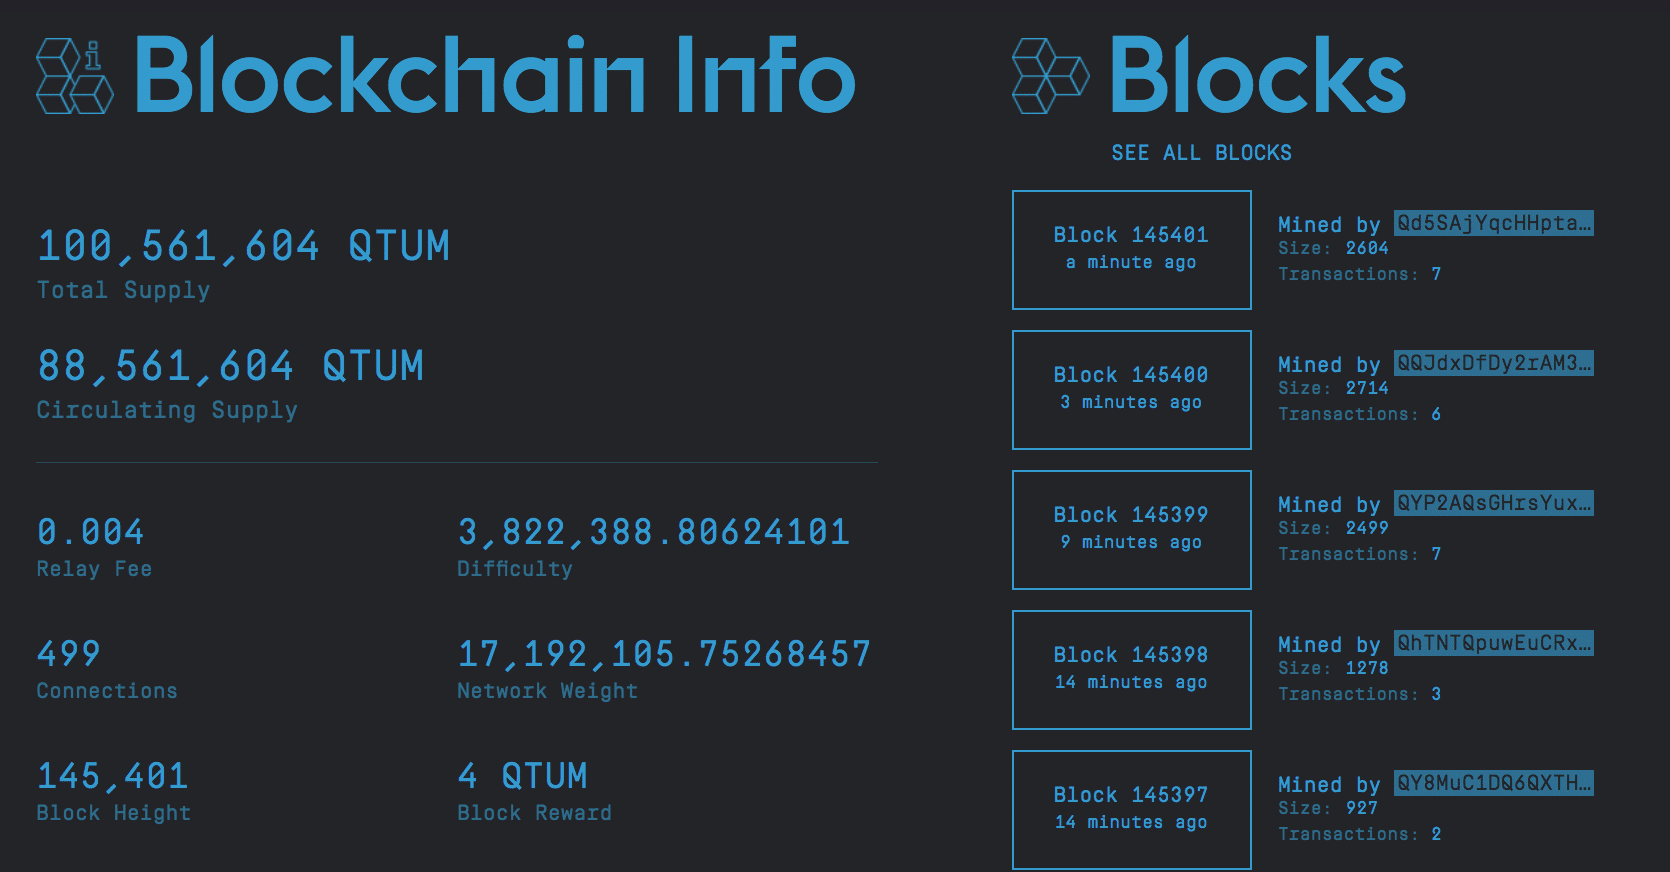 Informacije o blockchainu Qtum